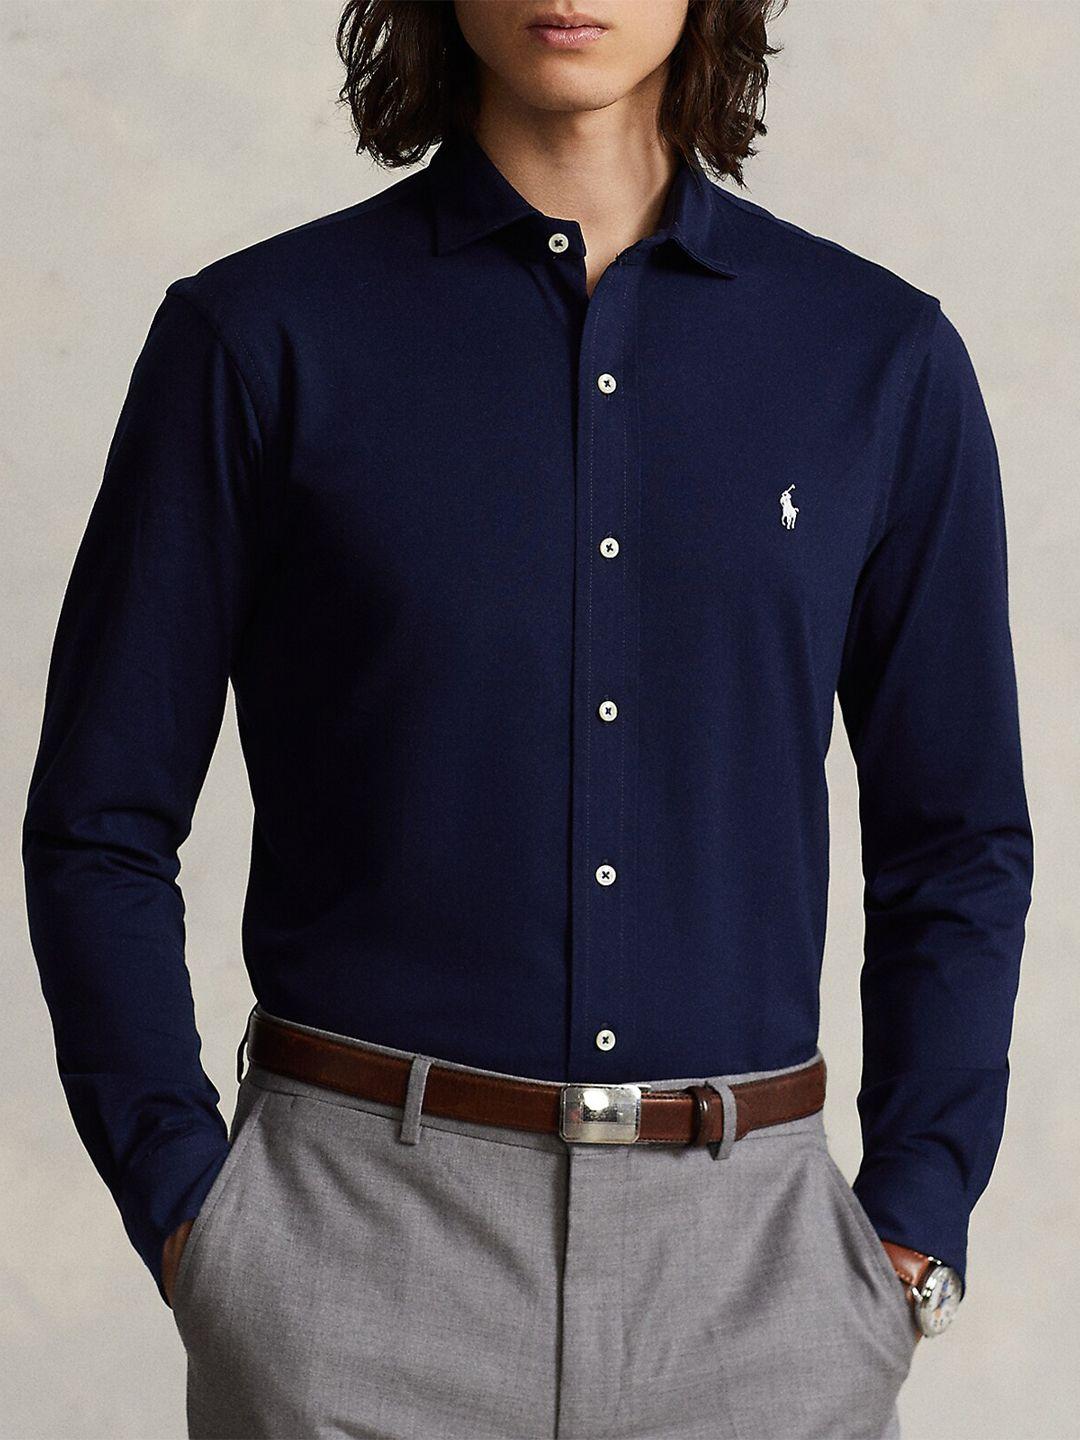 polo ralph lauren cotton formal shirt